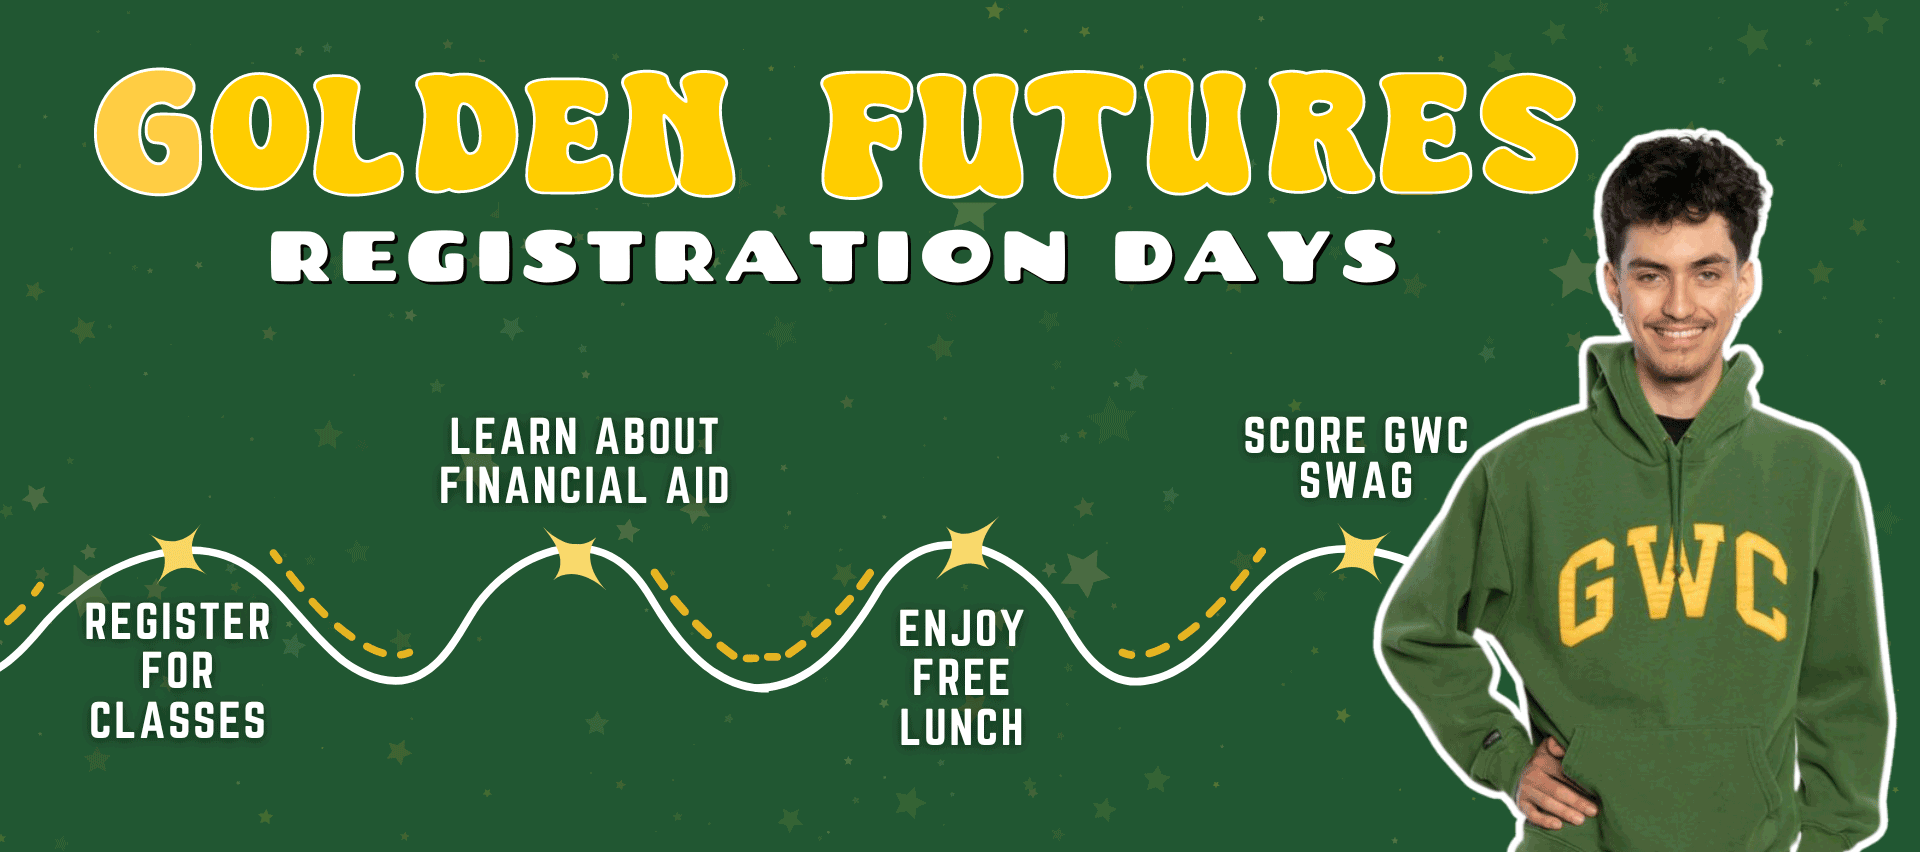 Sign-up for Golden Futures Registration Days